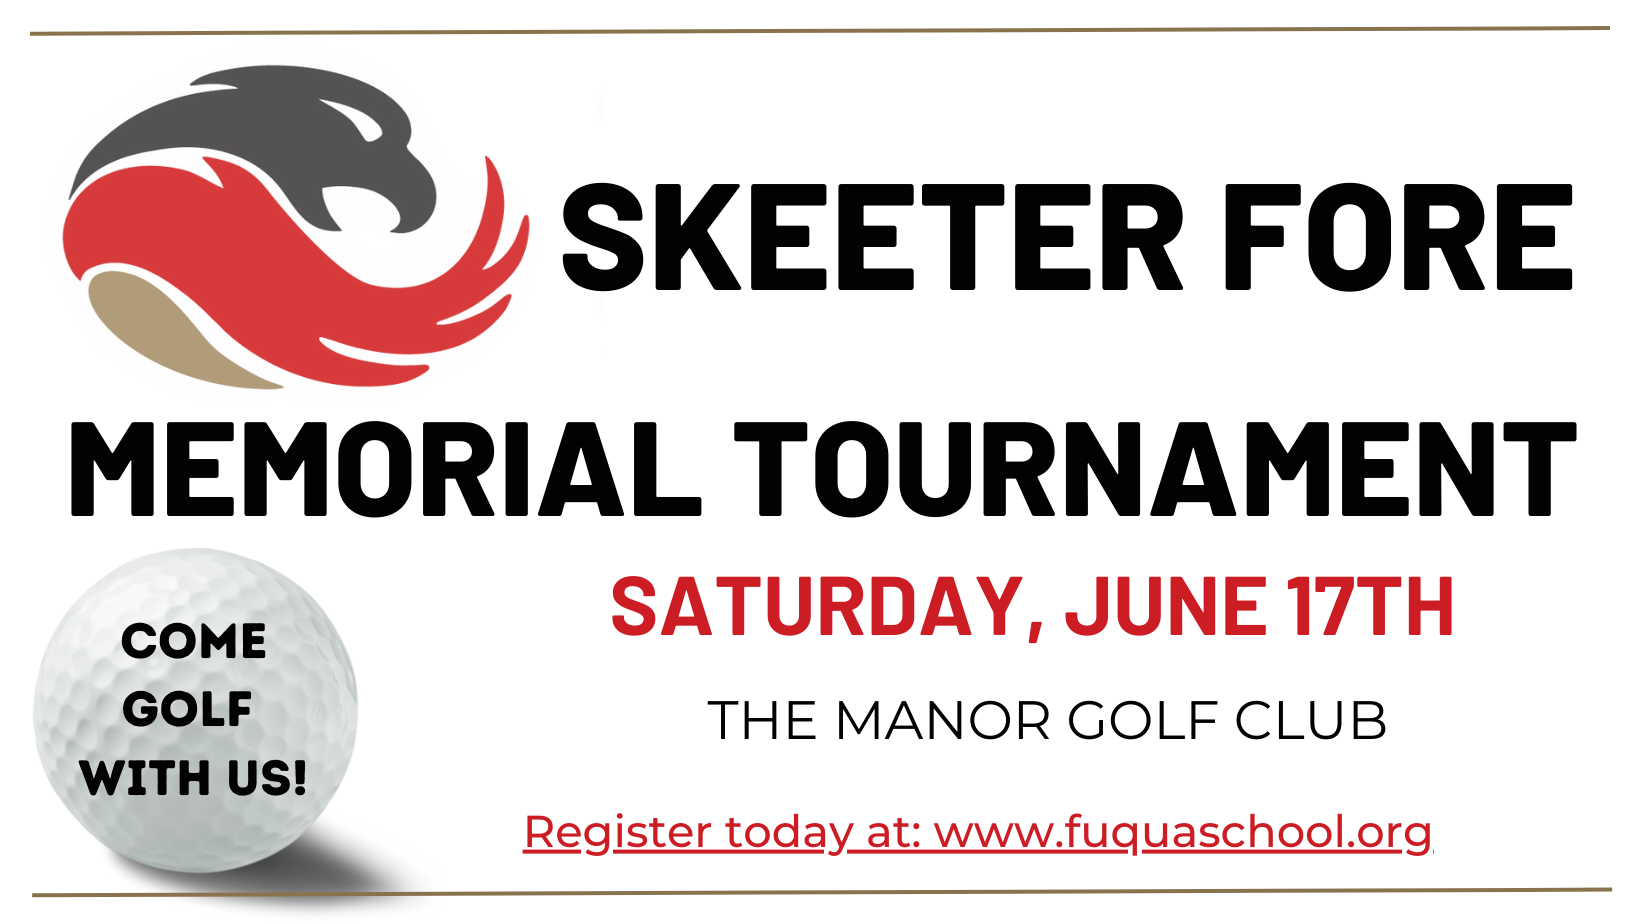 斯基特·福尔纪念锦标赛- 6月17日星期六，庄园高尔夫俱乐部. 和我们一起打高尔夫吧! 